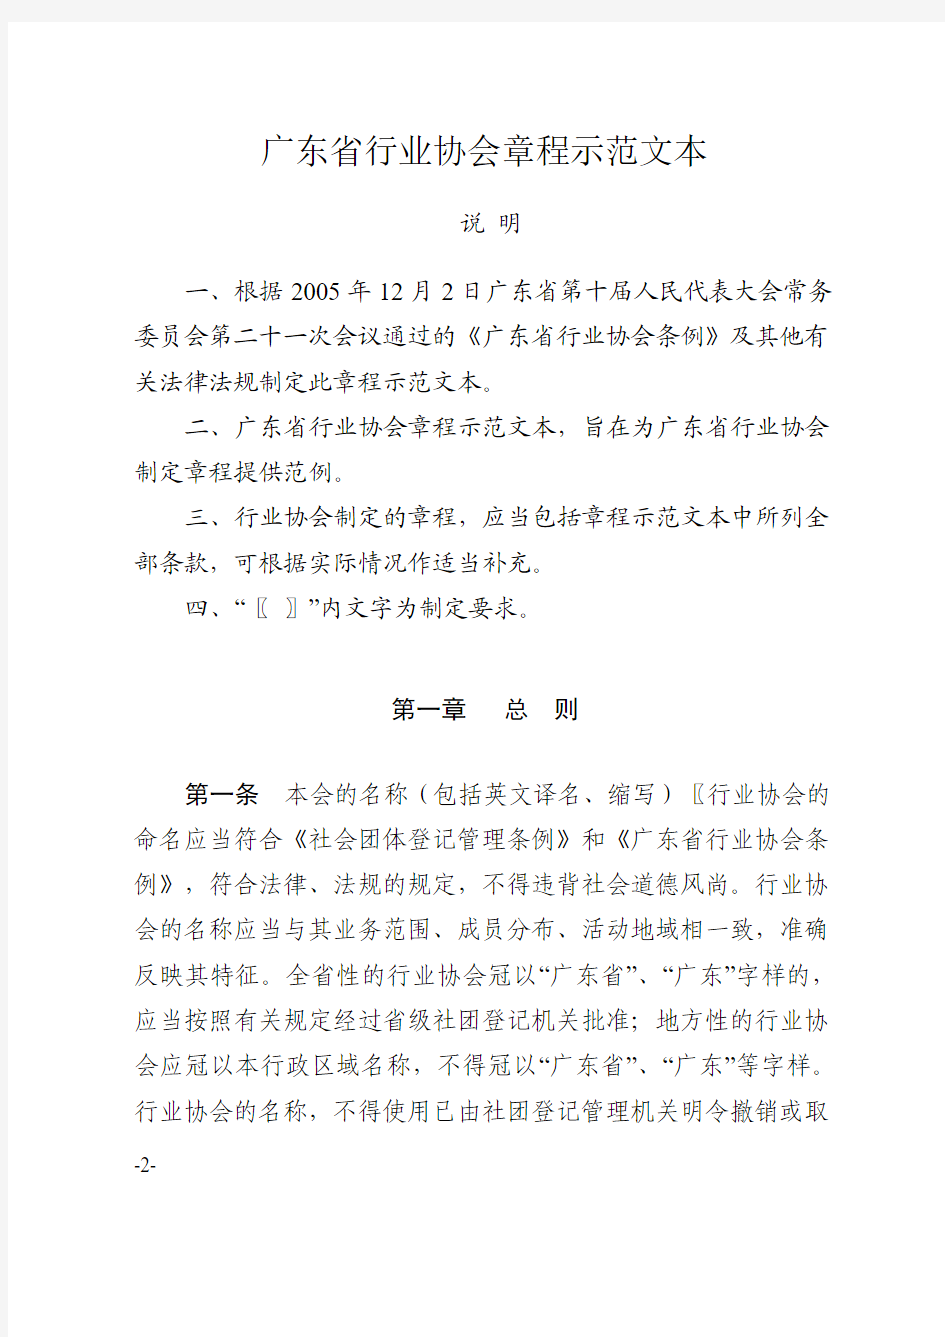 关于印发《广东省行业协会章程示范文本》的通知